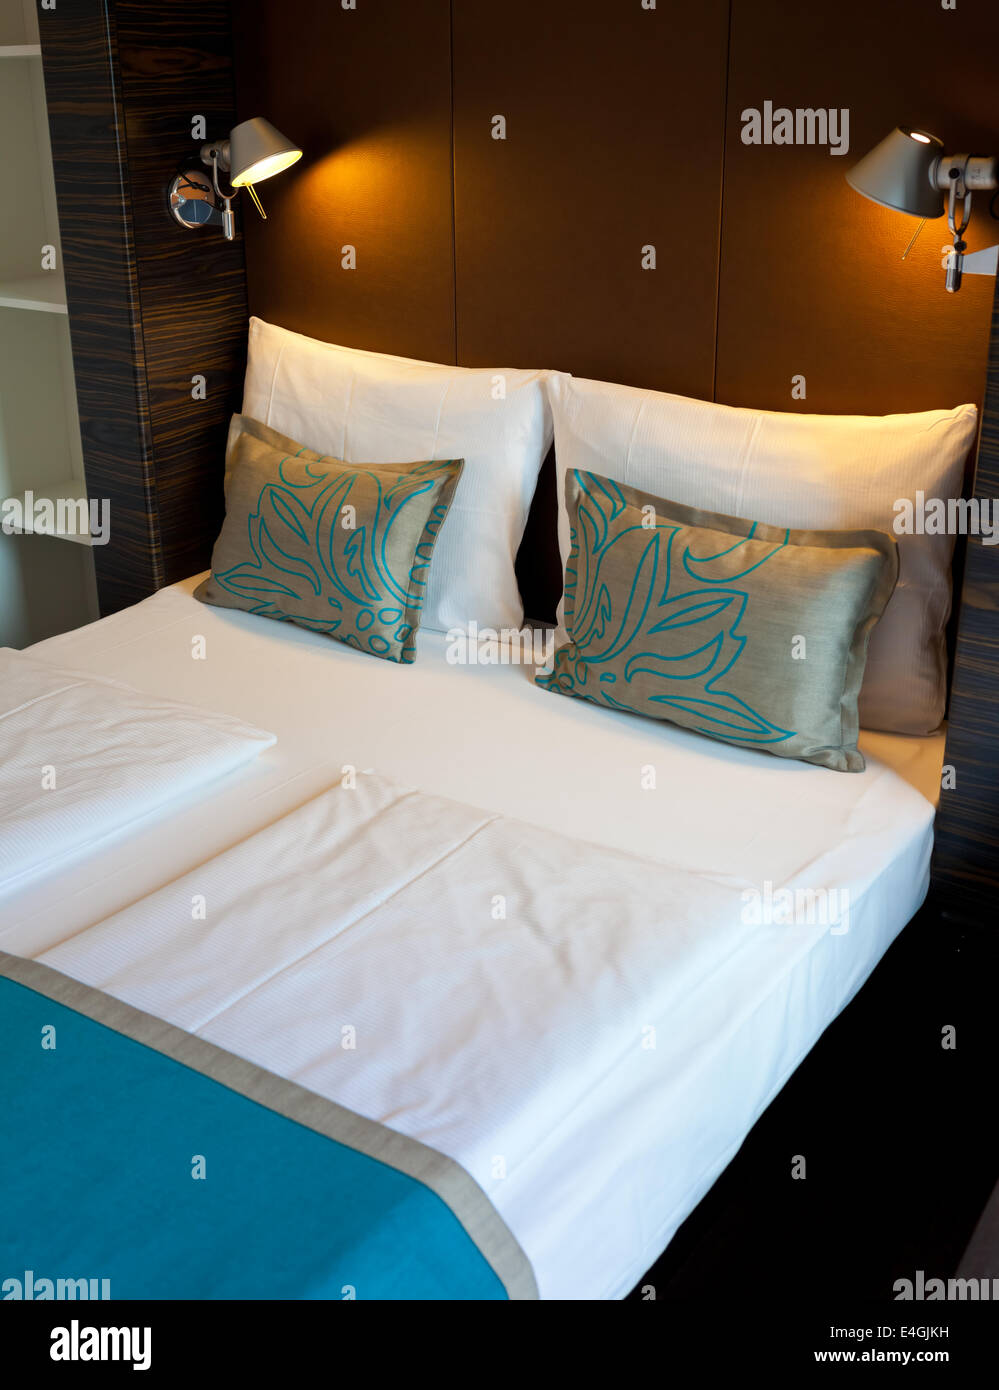 Cama doble en la habitación del hotel con luz suave Foto de stock